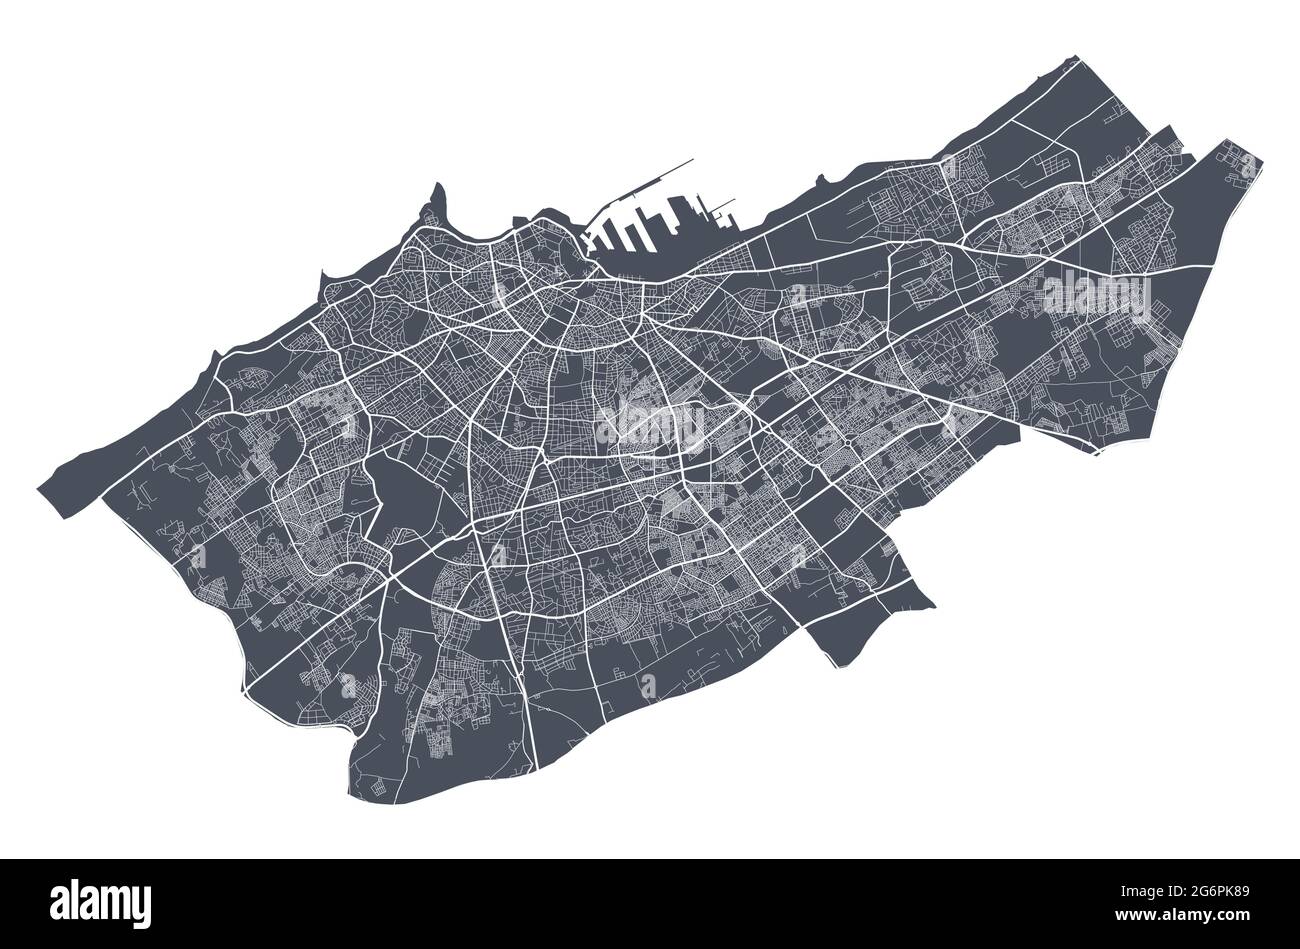 Plan de Casablanca. Carte vectorielle détaillée de la zone administrative de Casablanca. Vue sur l'aria métropolitain avec affiche CityScape. Terre sombre avec rues blanches, roa Illustration de Vecteur